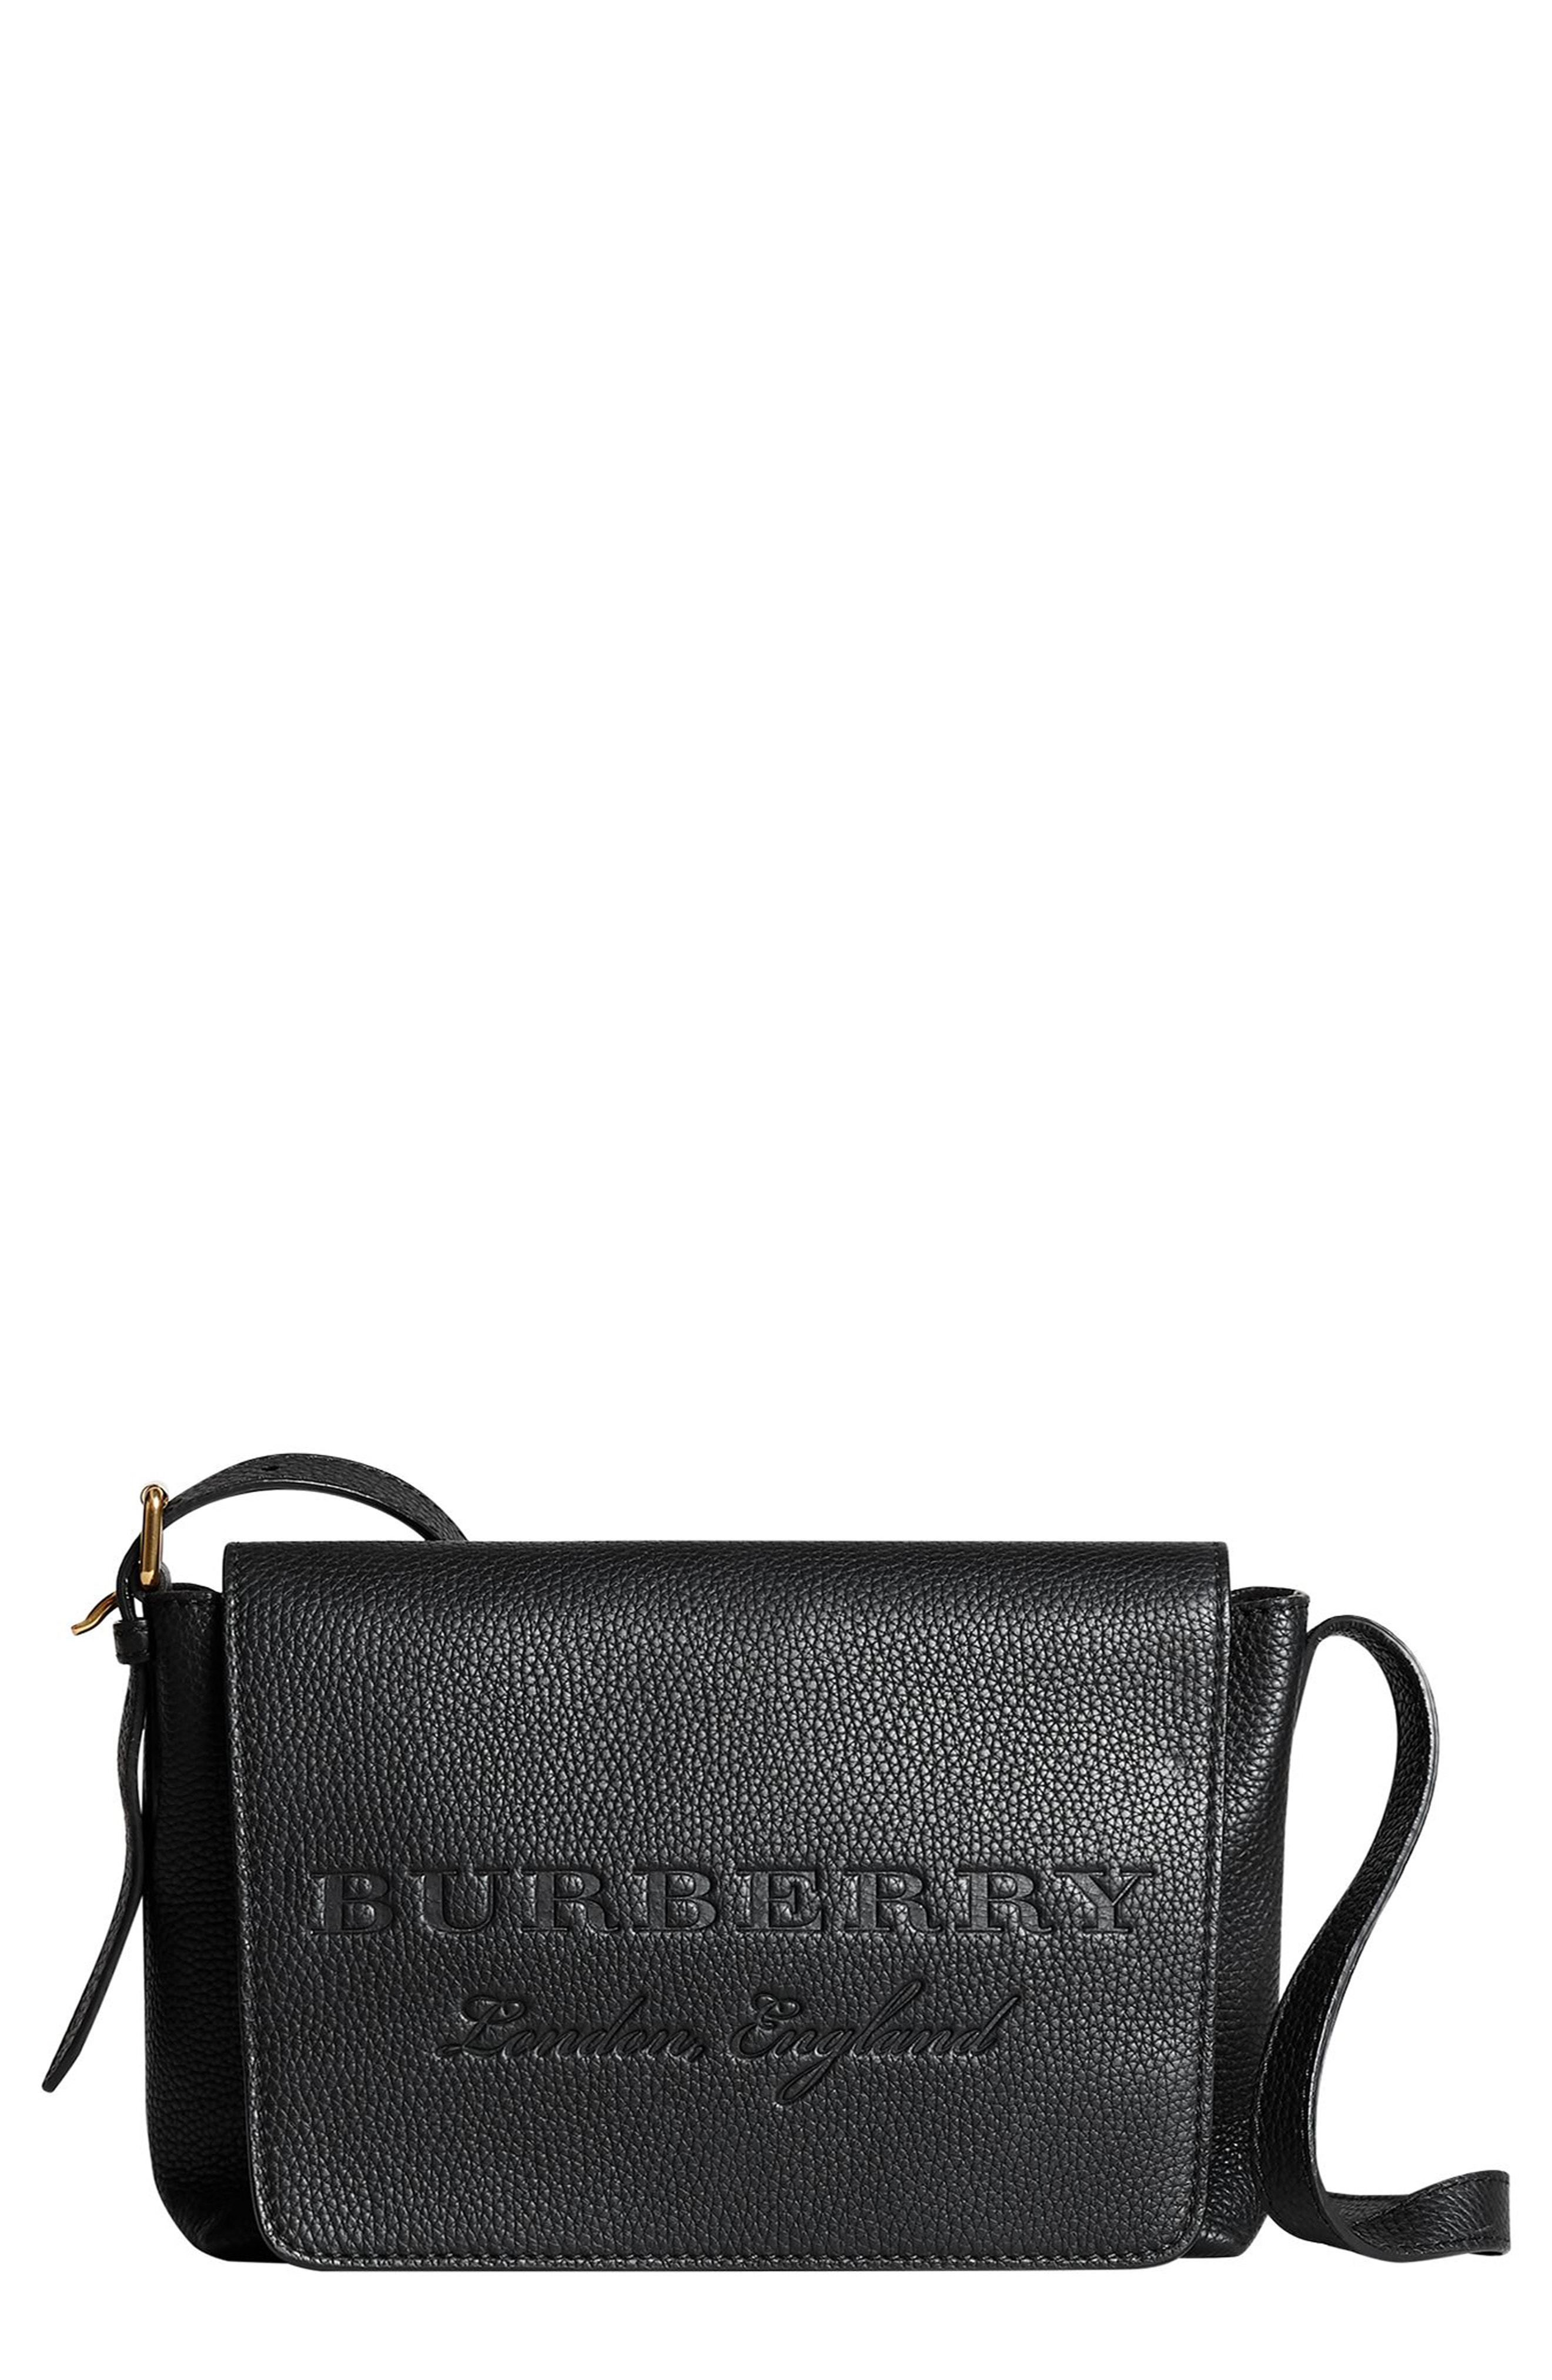 burberry burleigh bag